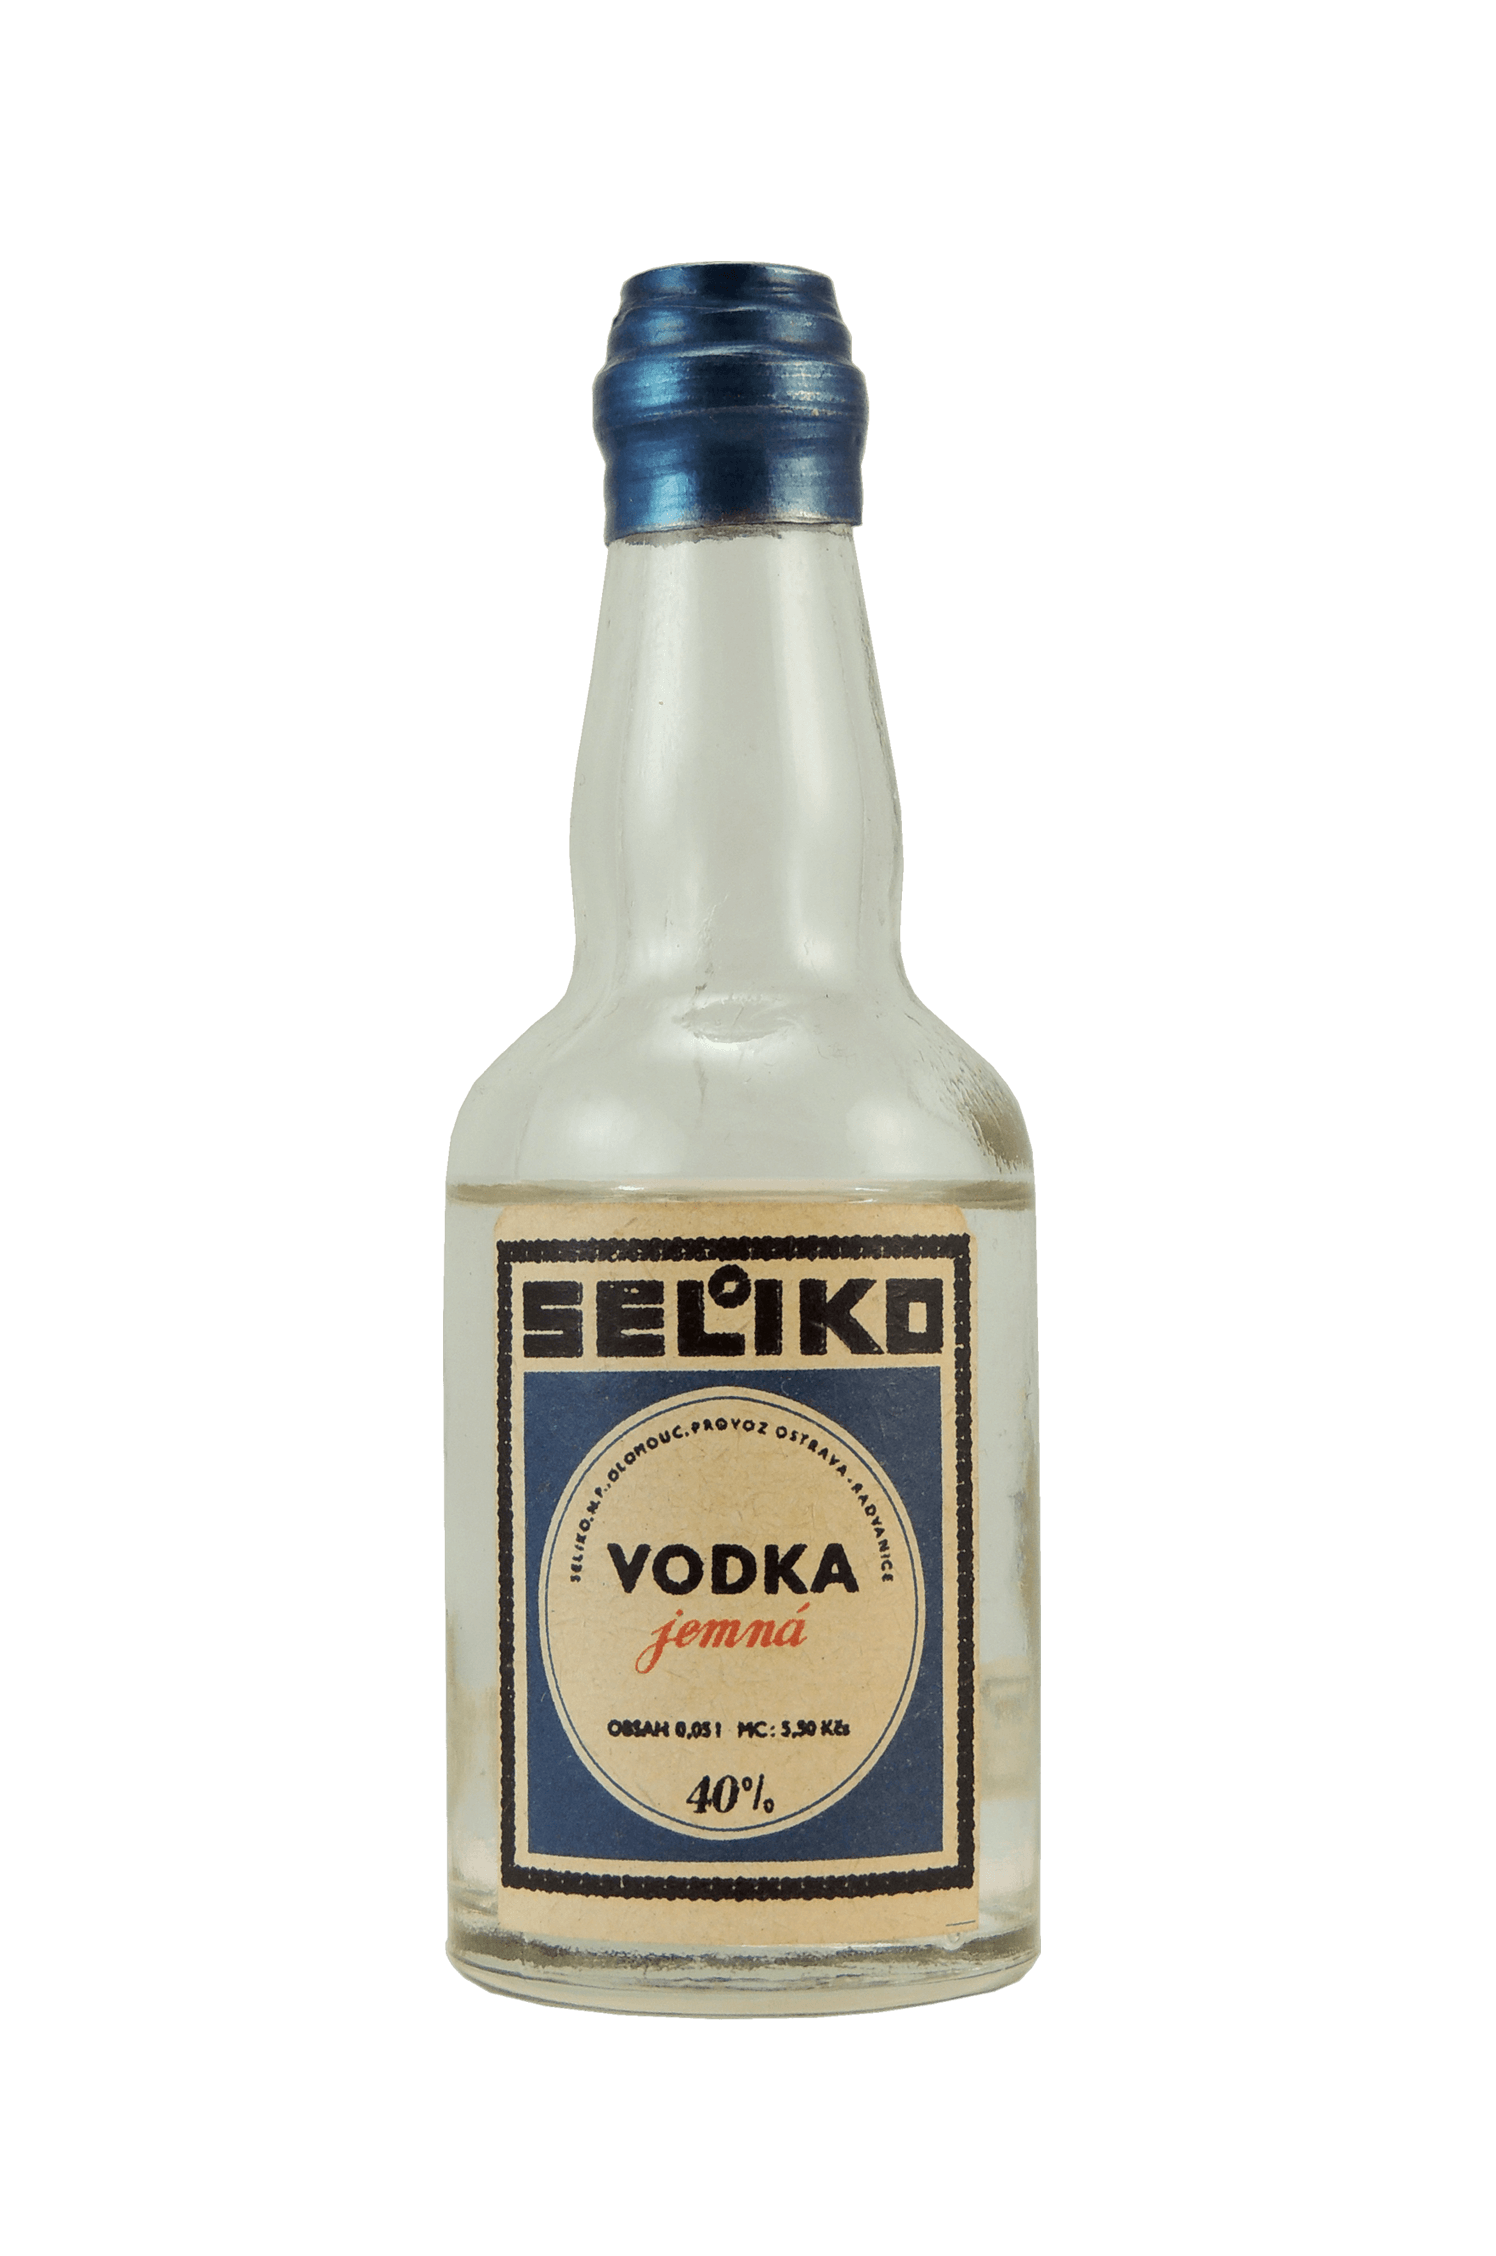 Vodka Jemná Seliko